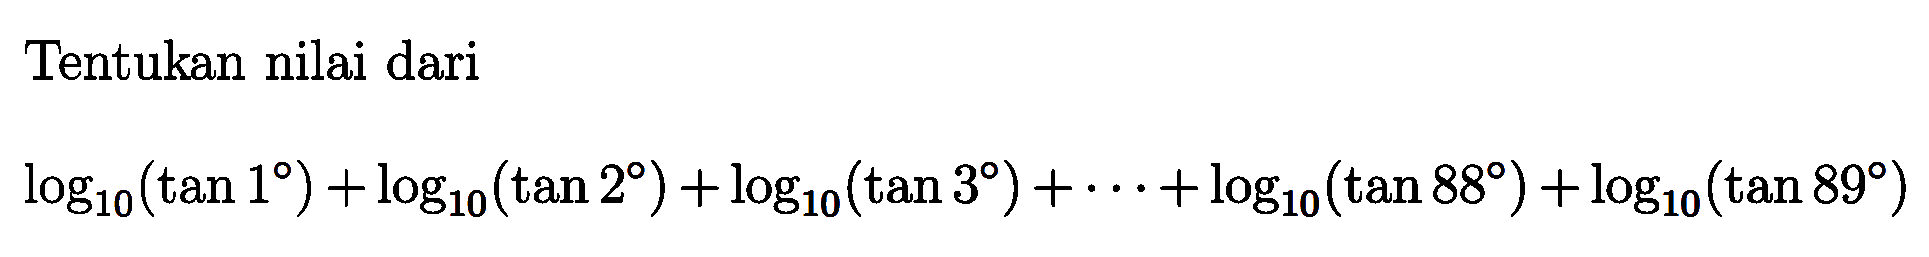 Tentukan nilai dari log10(tan 1)+log10(tan 2)+log10(tan 3)+...+log10(tan 88)+log10(tan 89)